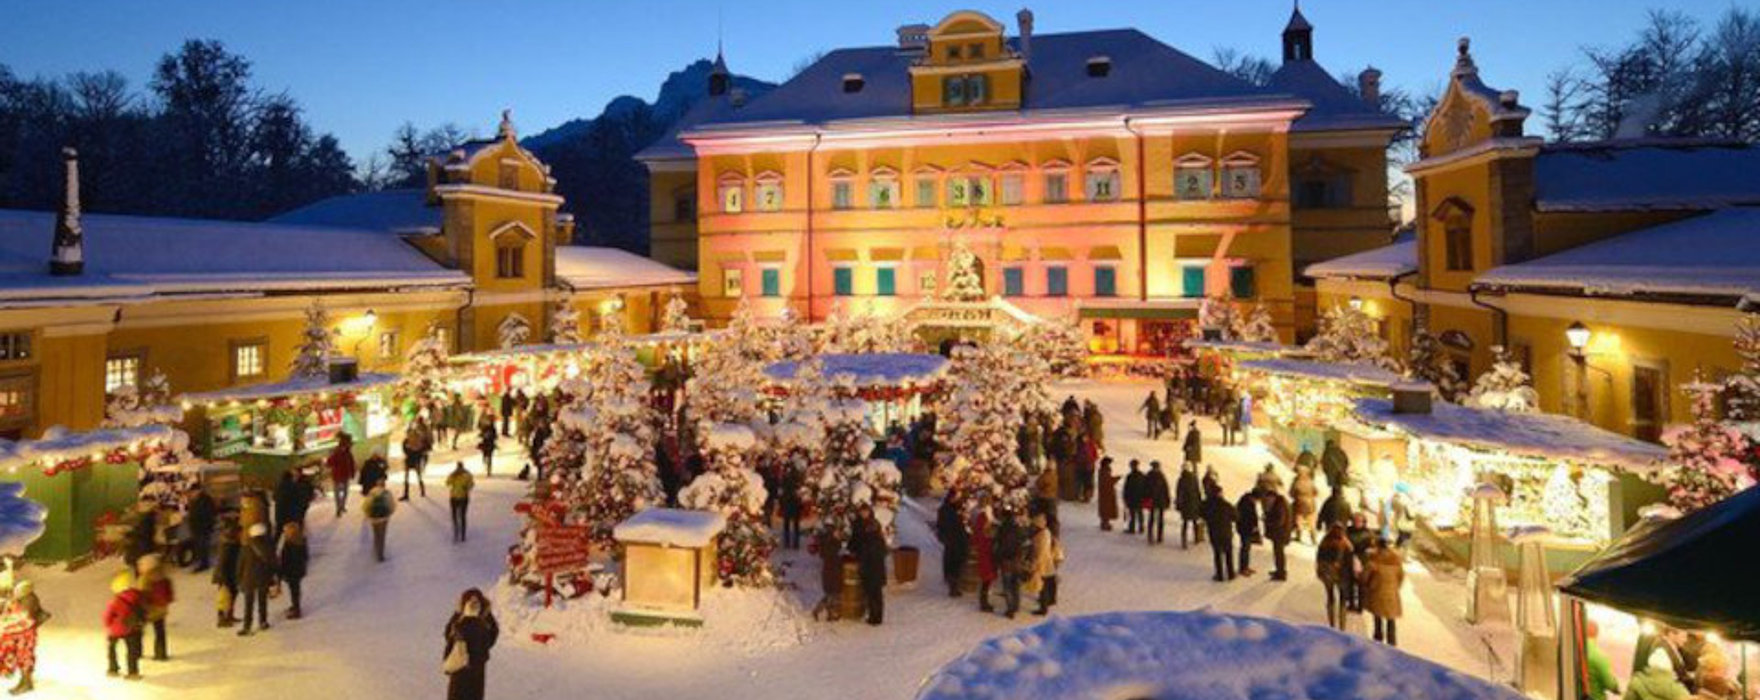 Schloss Hellbrunn & Wasserspiele - Blick auf den Adventmarkt zur Weihnachtszeit